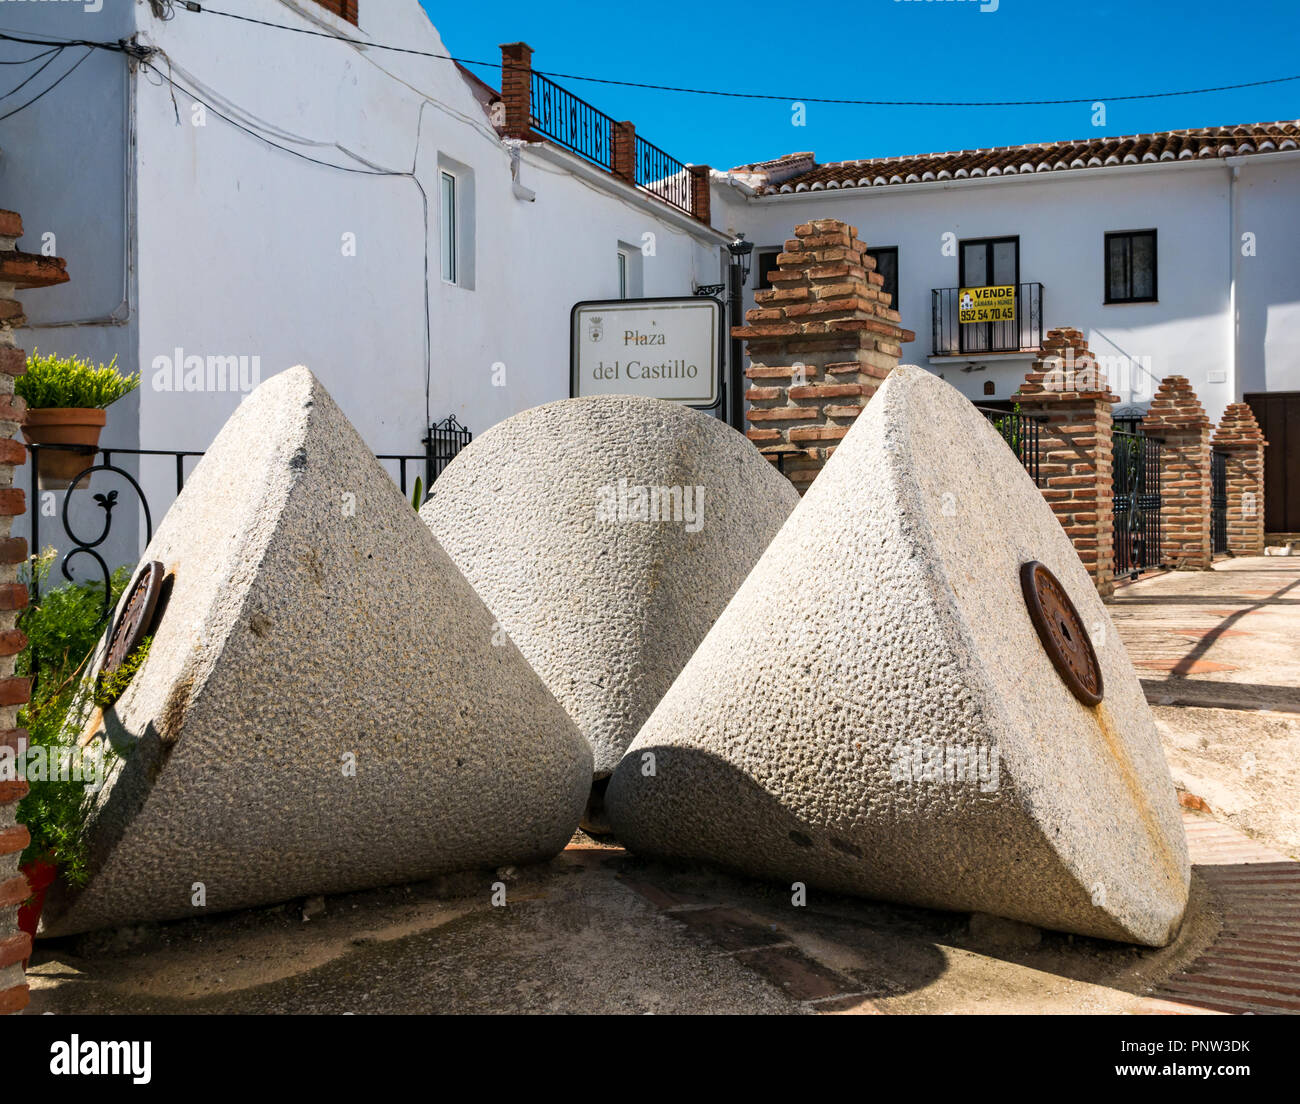 Unusual old conical olive grinding stones, Plaza del Castillo, Canillas de Acietuna, Mudejar route, Andalusia, Spain Stock Photo